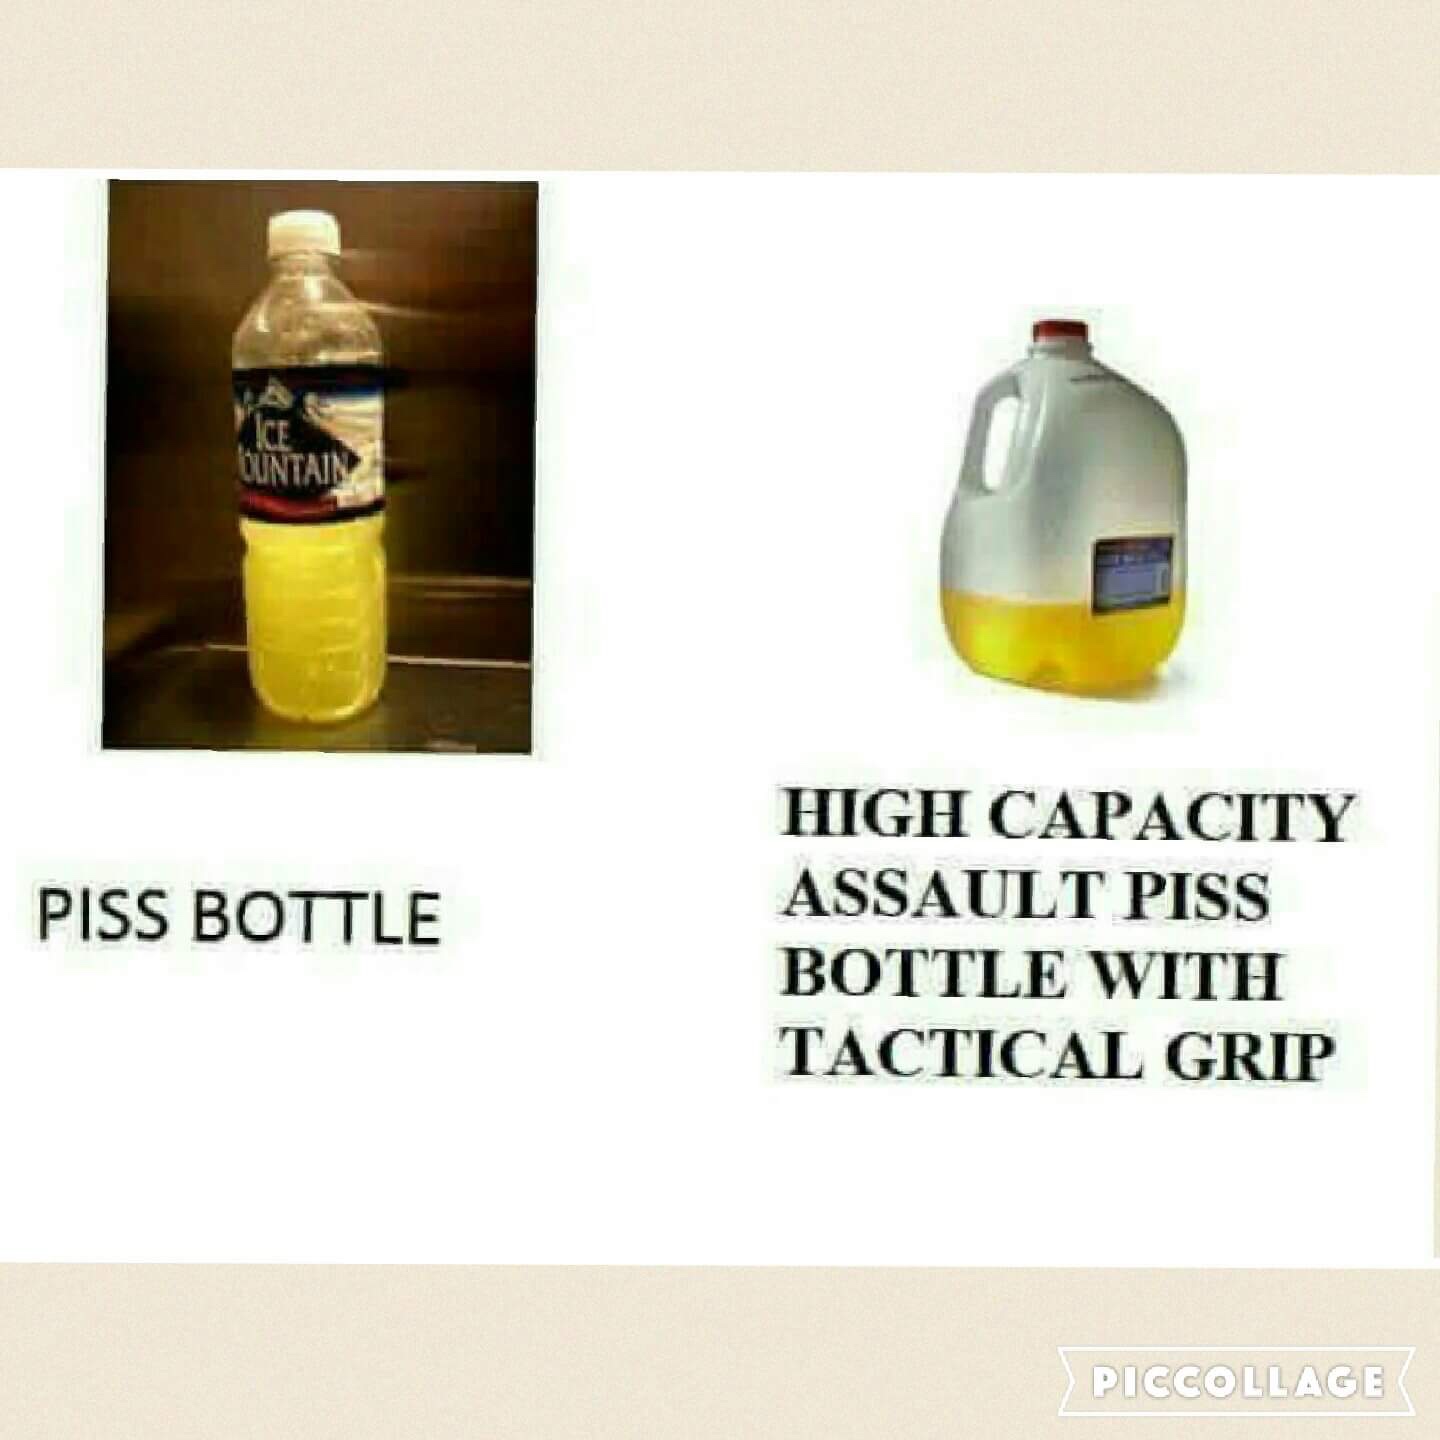 dank meme - piss jugs - Guntain Piss Bottle High Capacity Assault Piss Bottle With Tactical Grip Piccollage